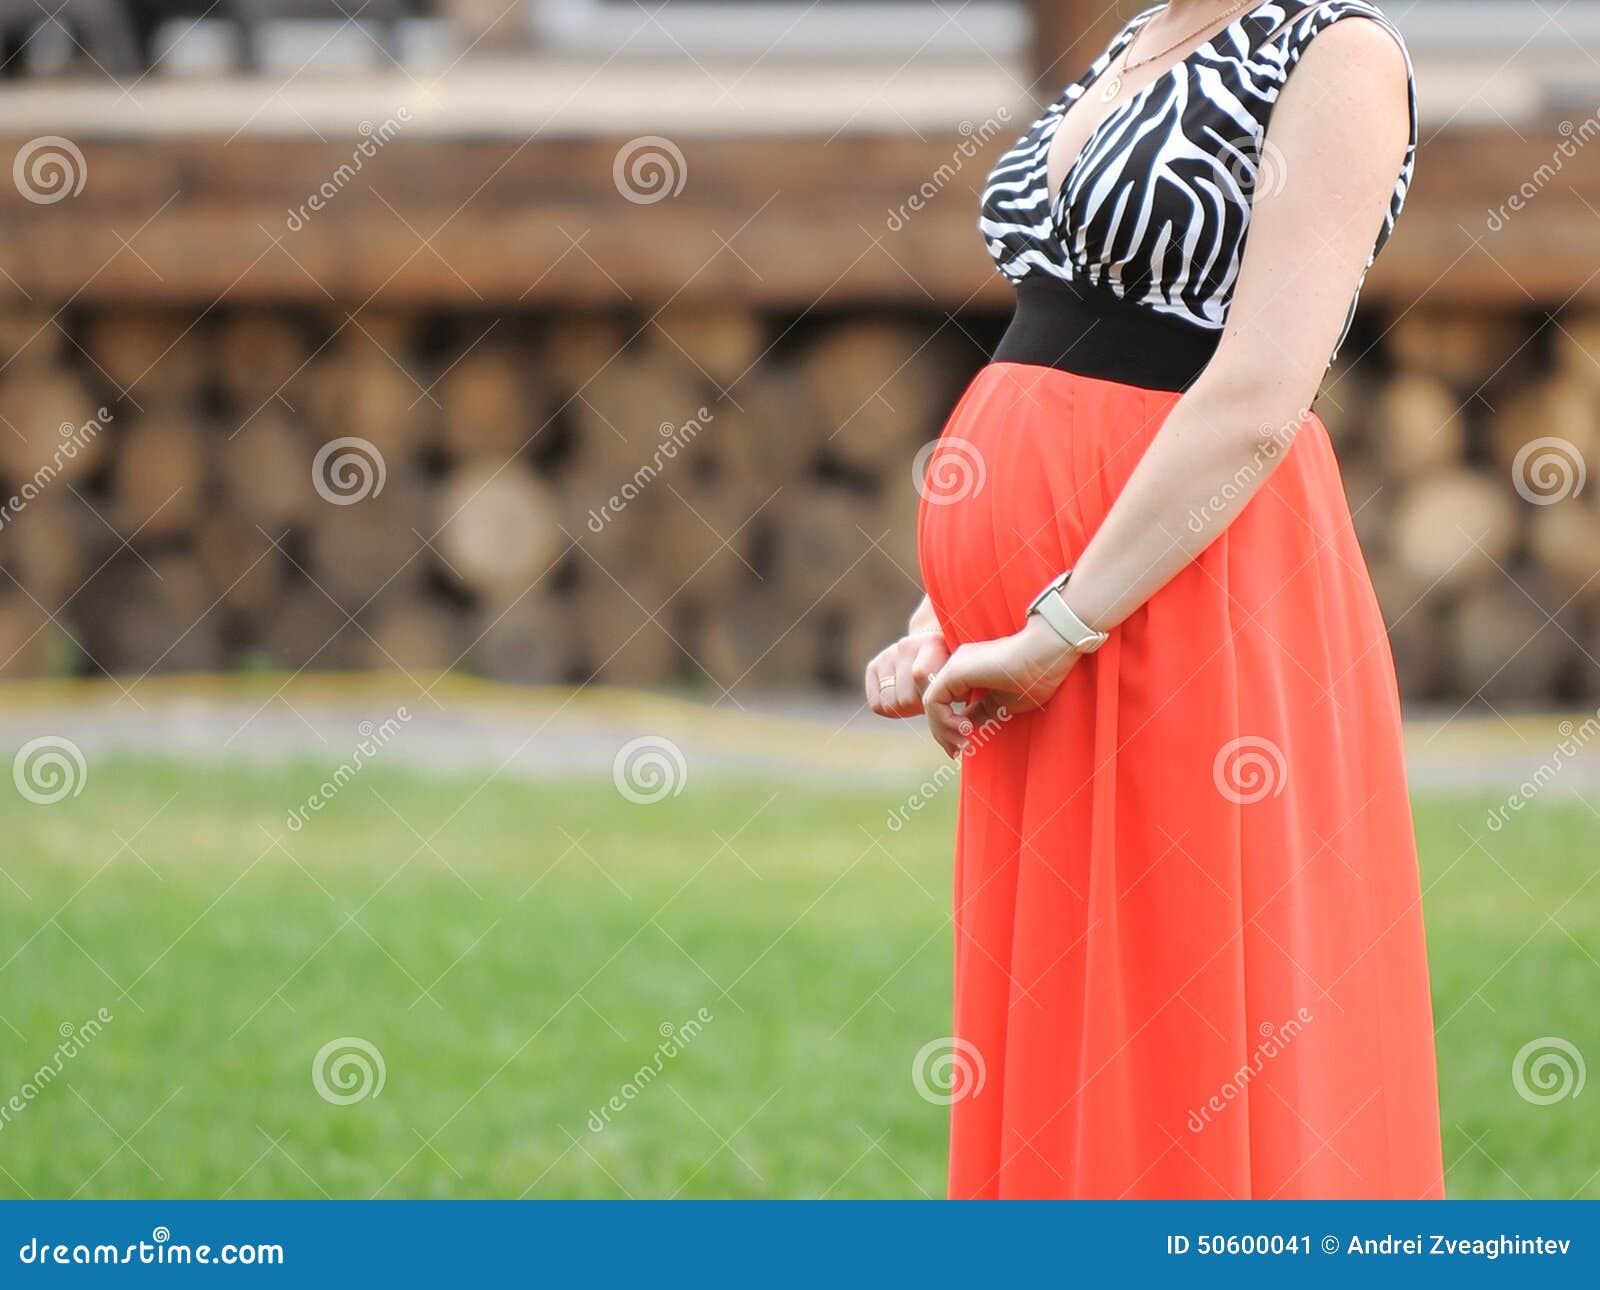 Embarazada En Roja Imagen de archivo - Imagen de 50600041